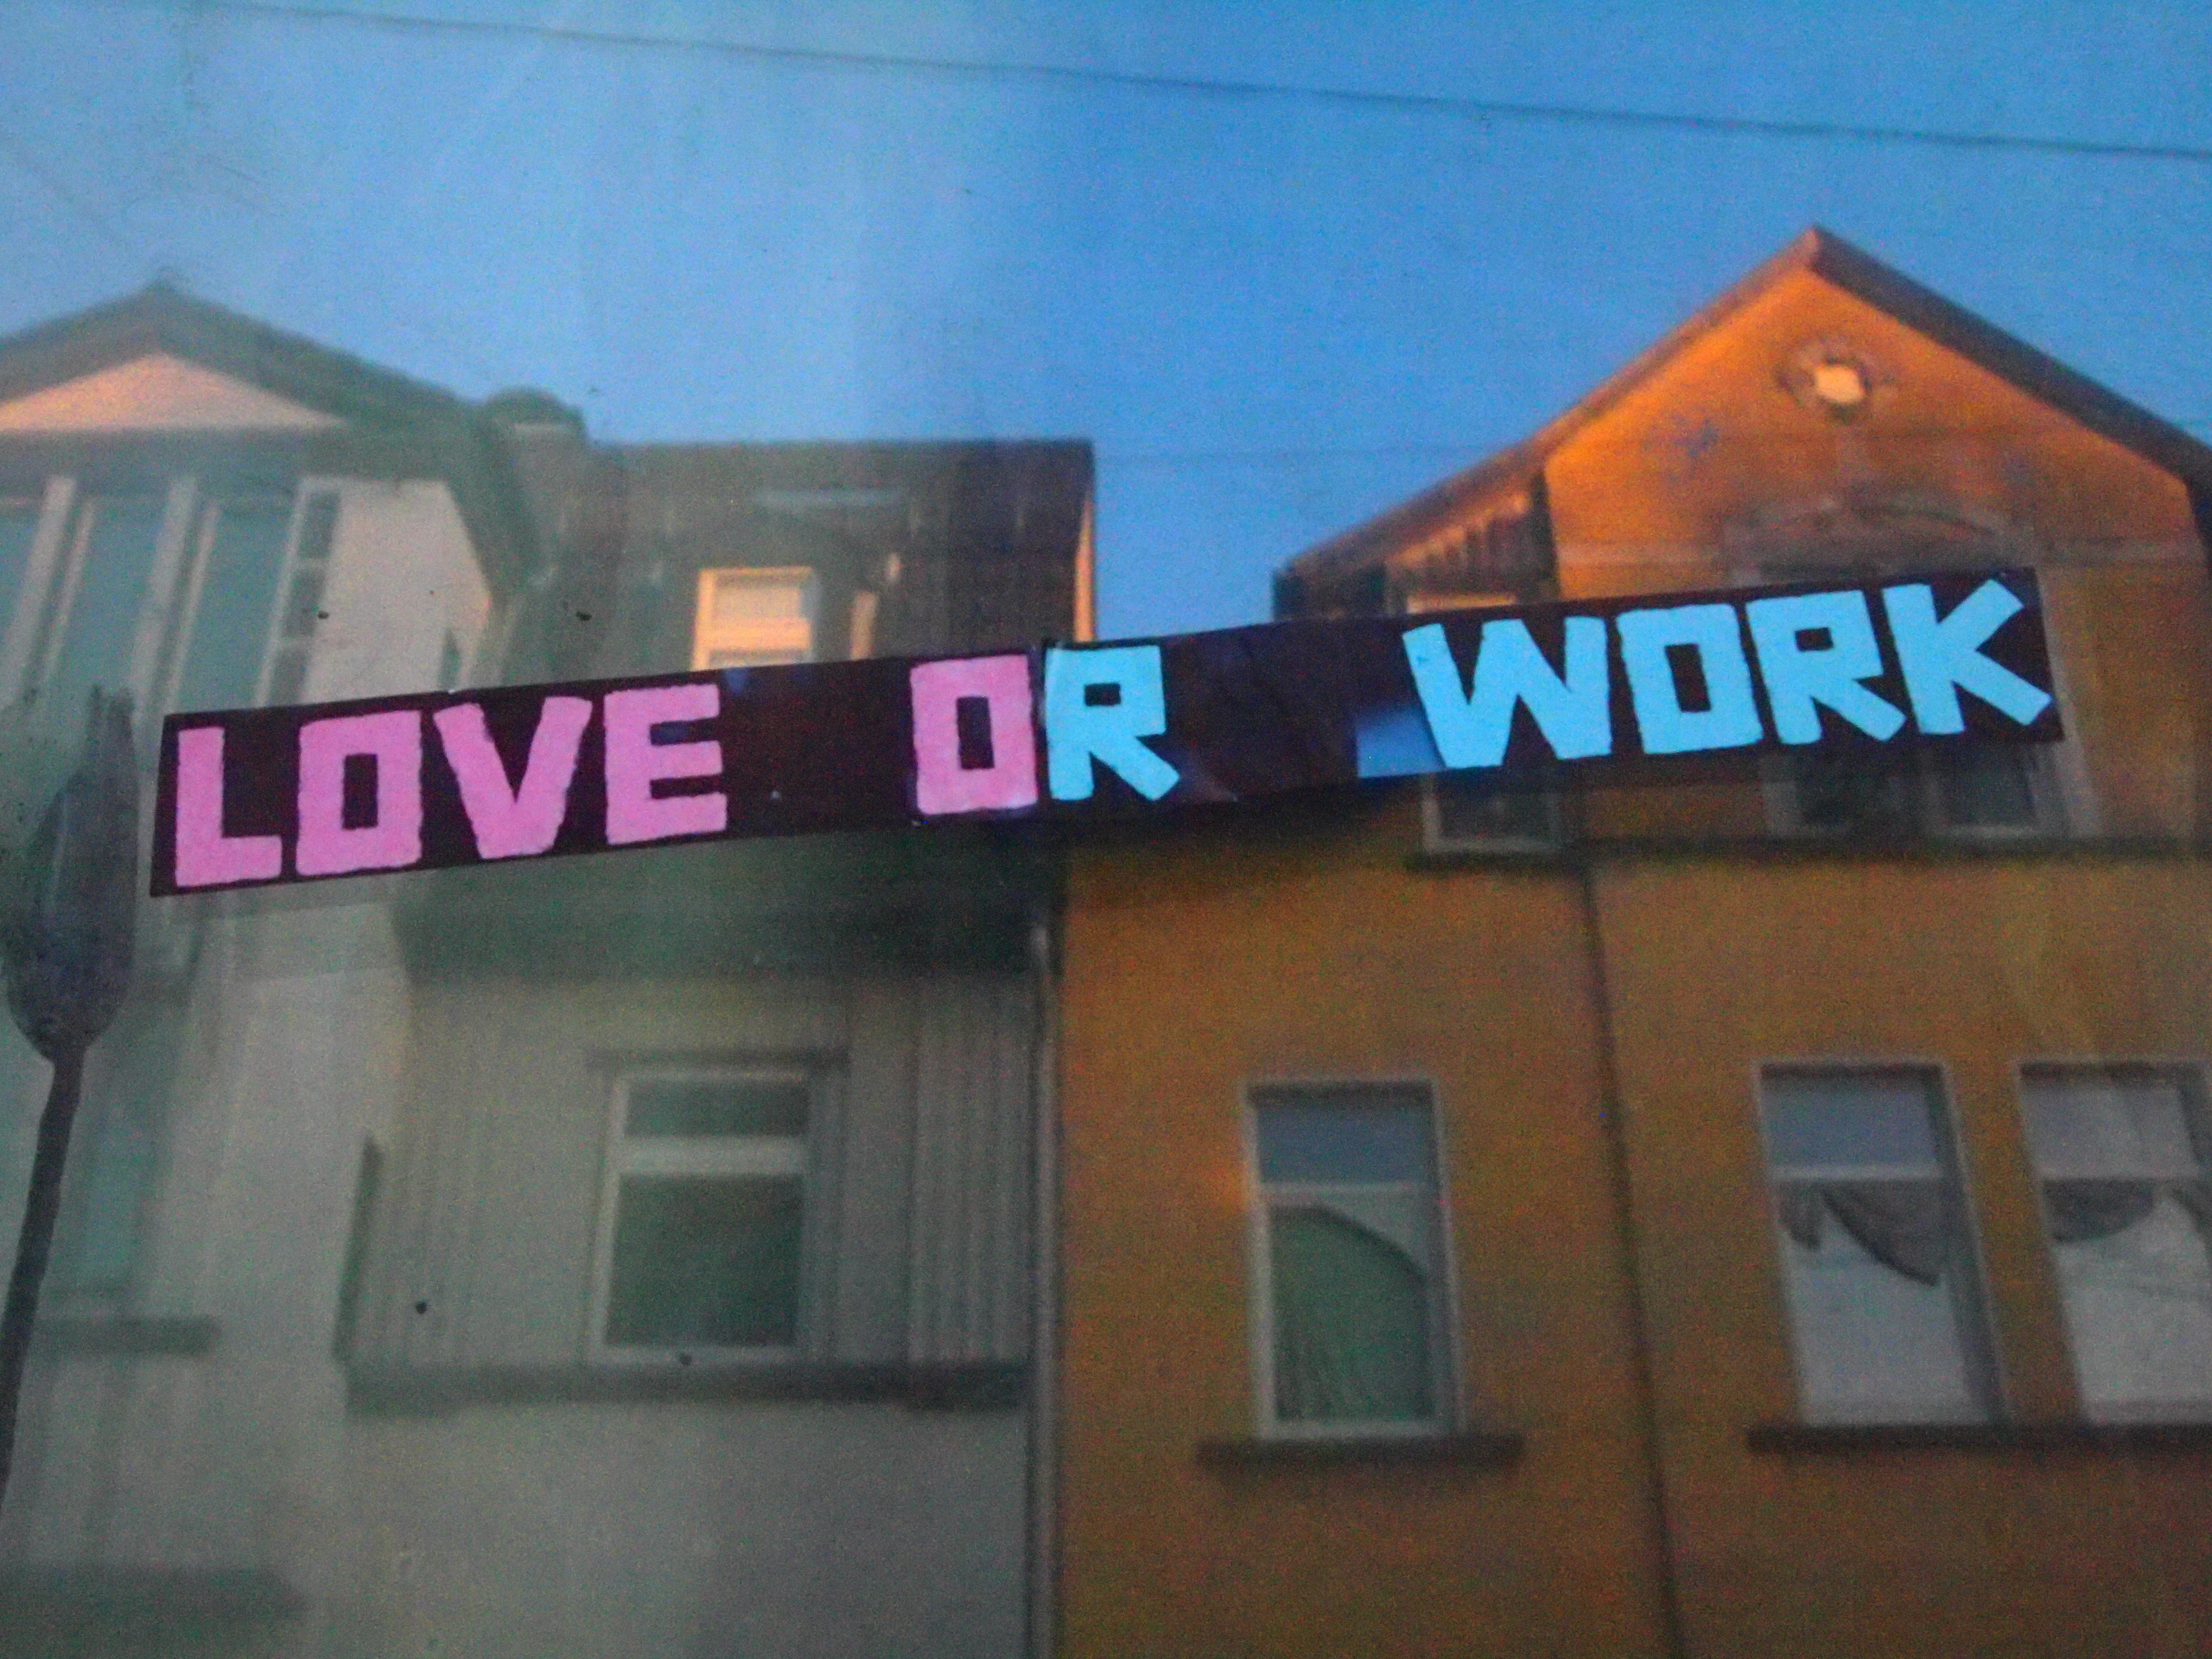 Awesomepreneur - Love or work?